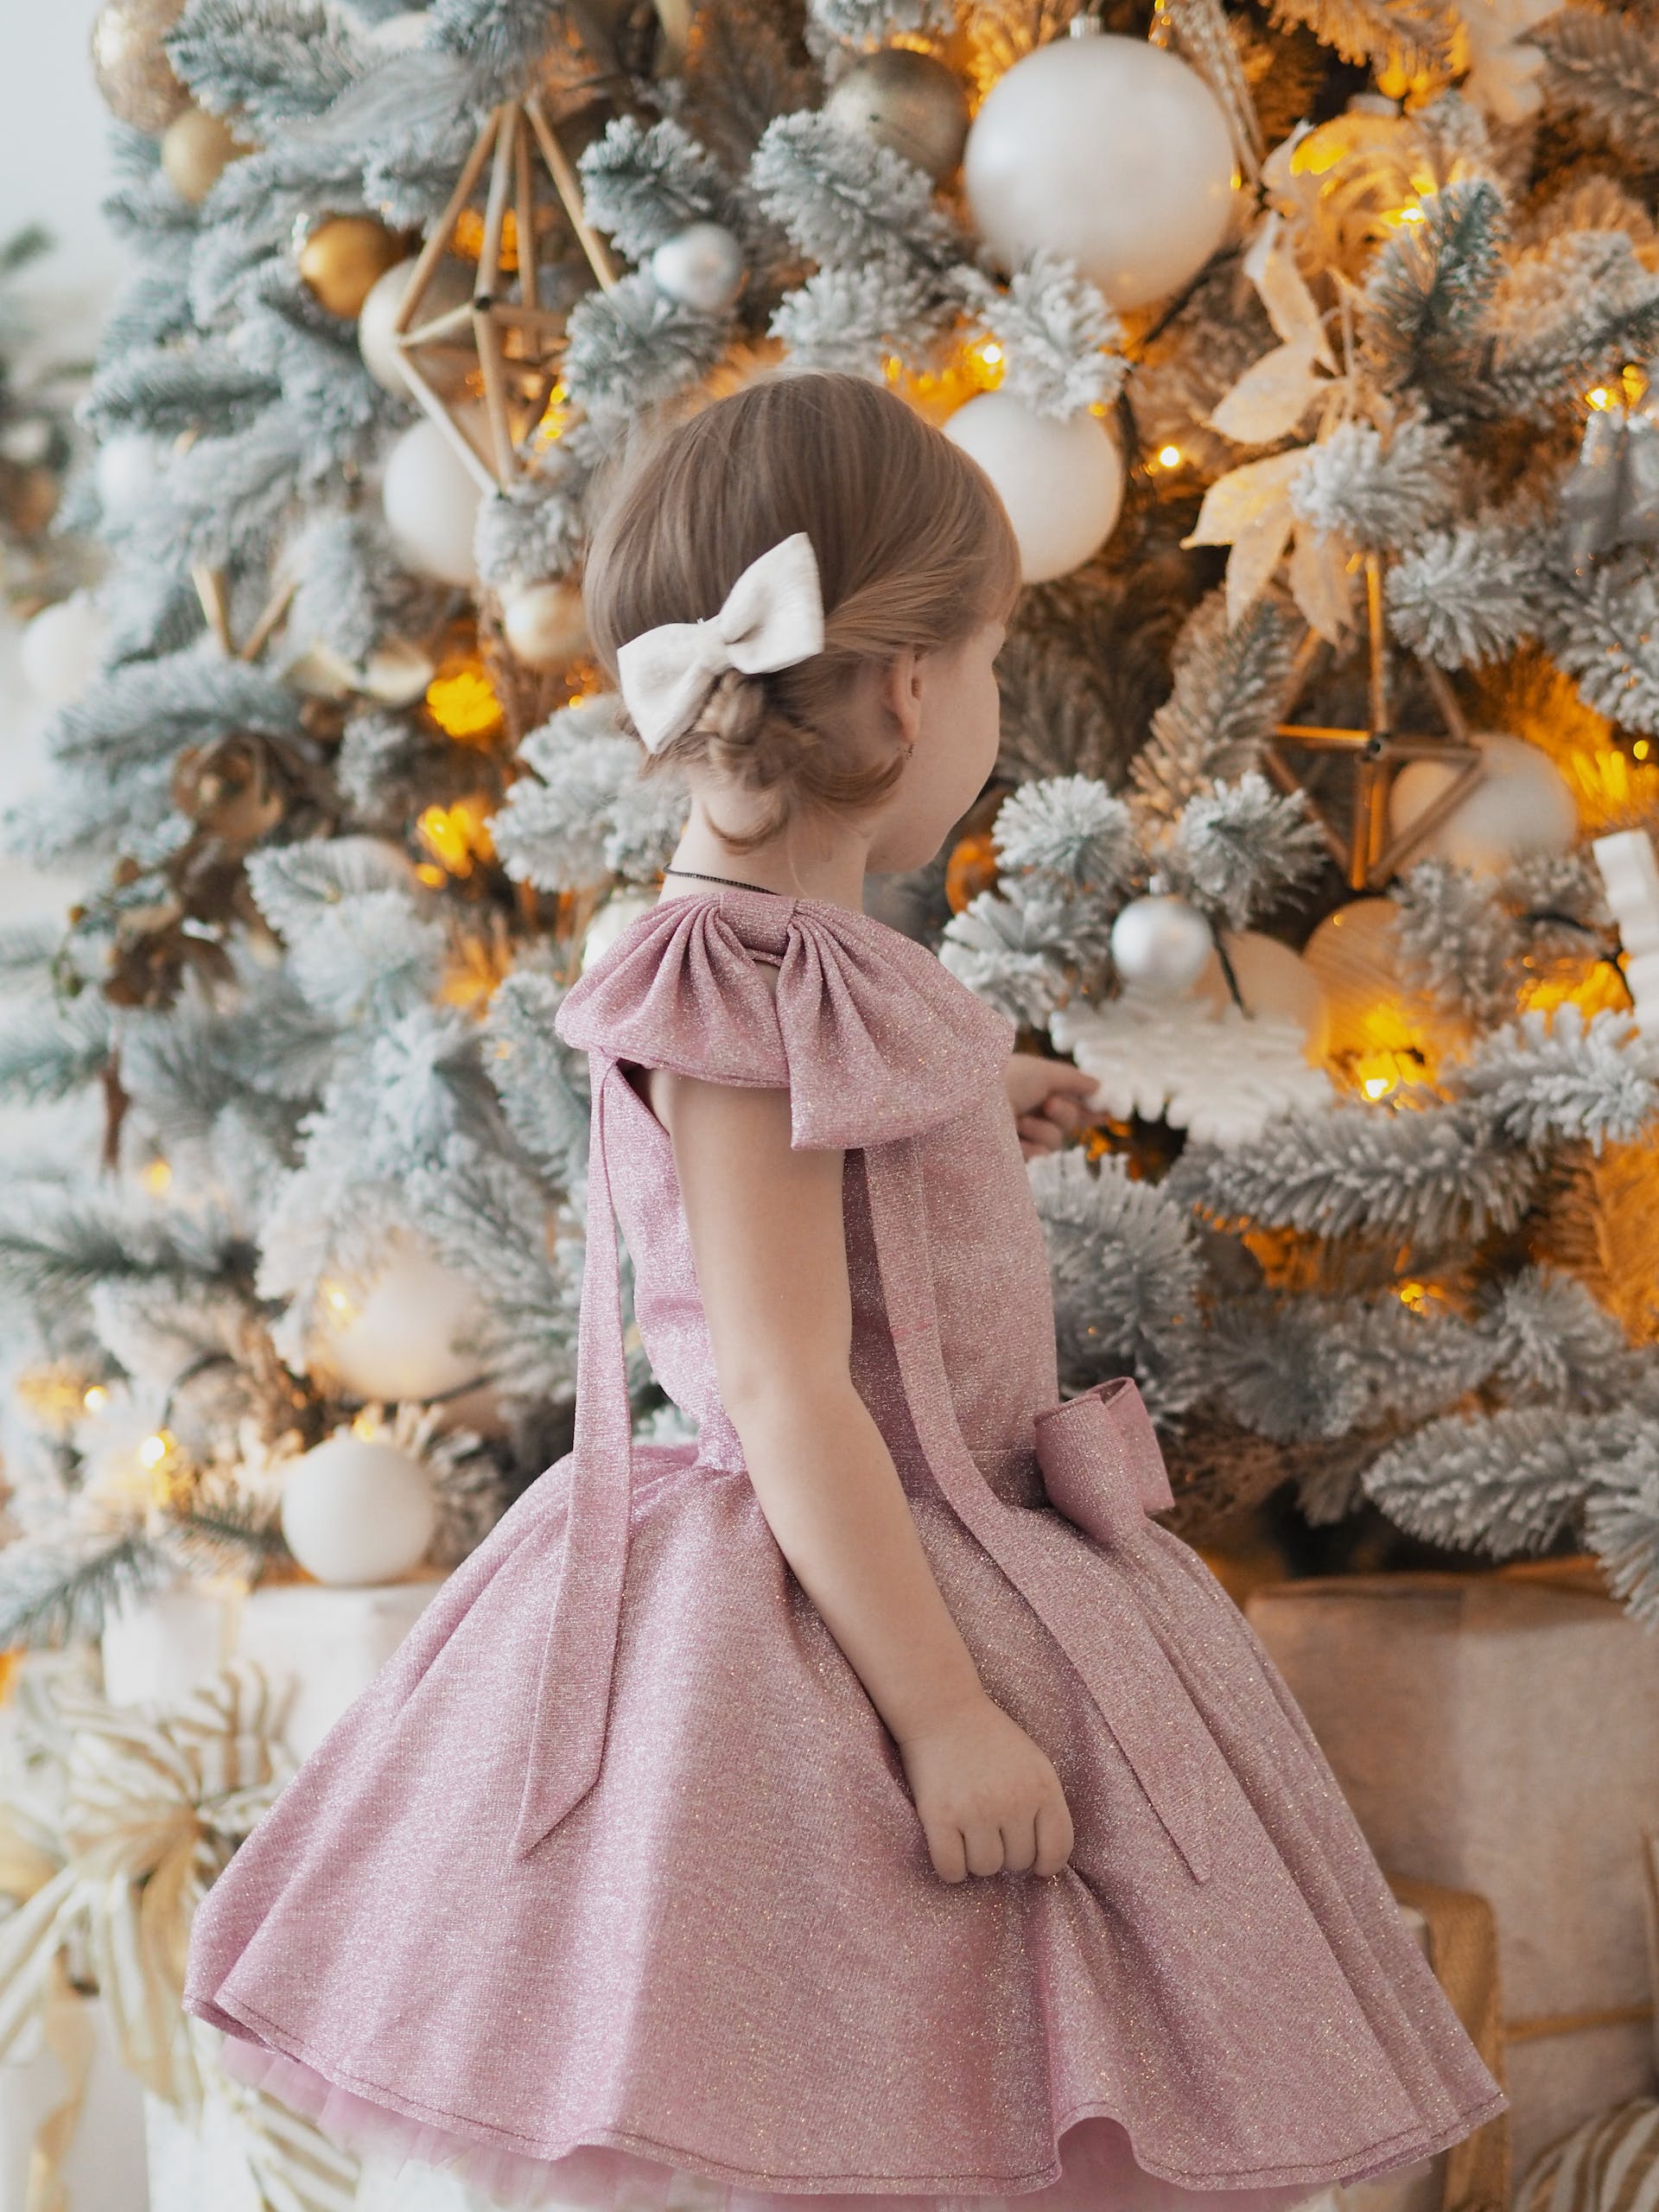 Une petite fille qui regarde un sapin de Noël | Source : Pexels